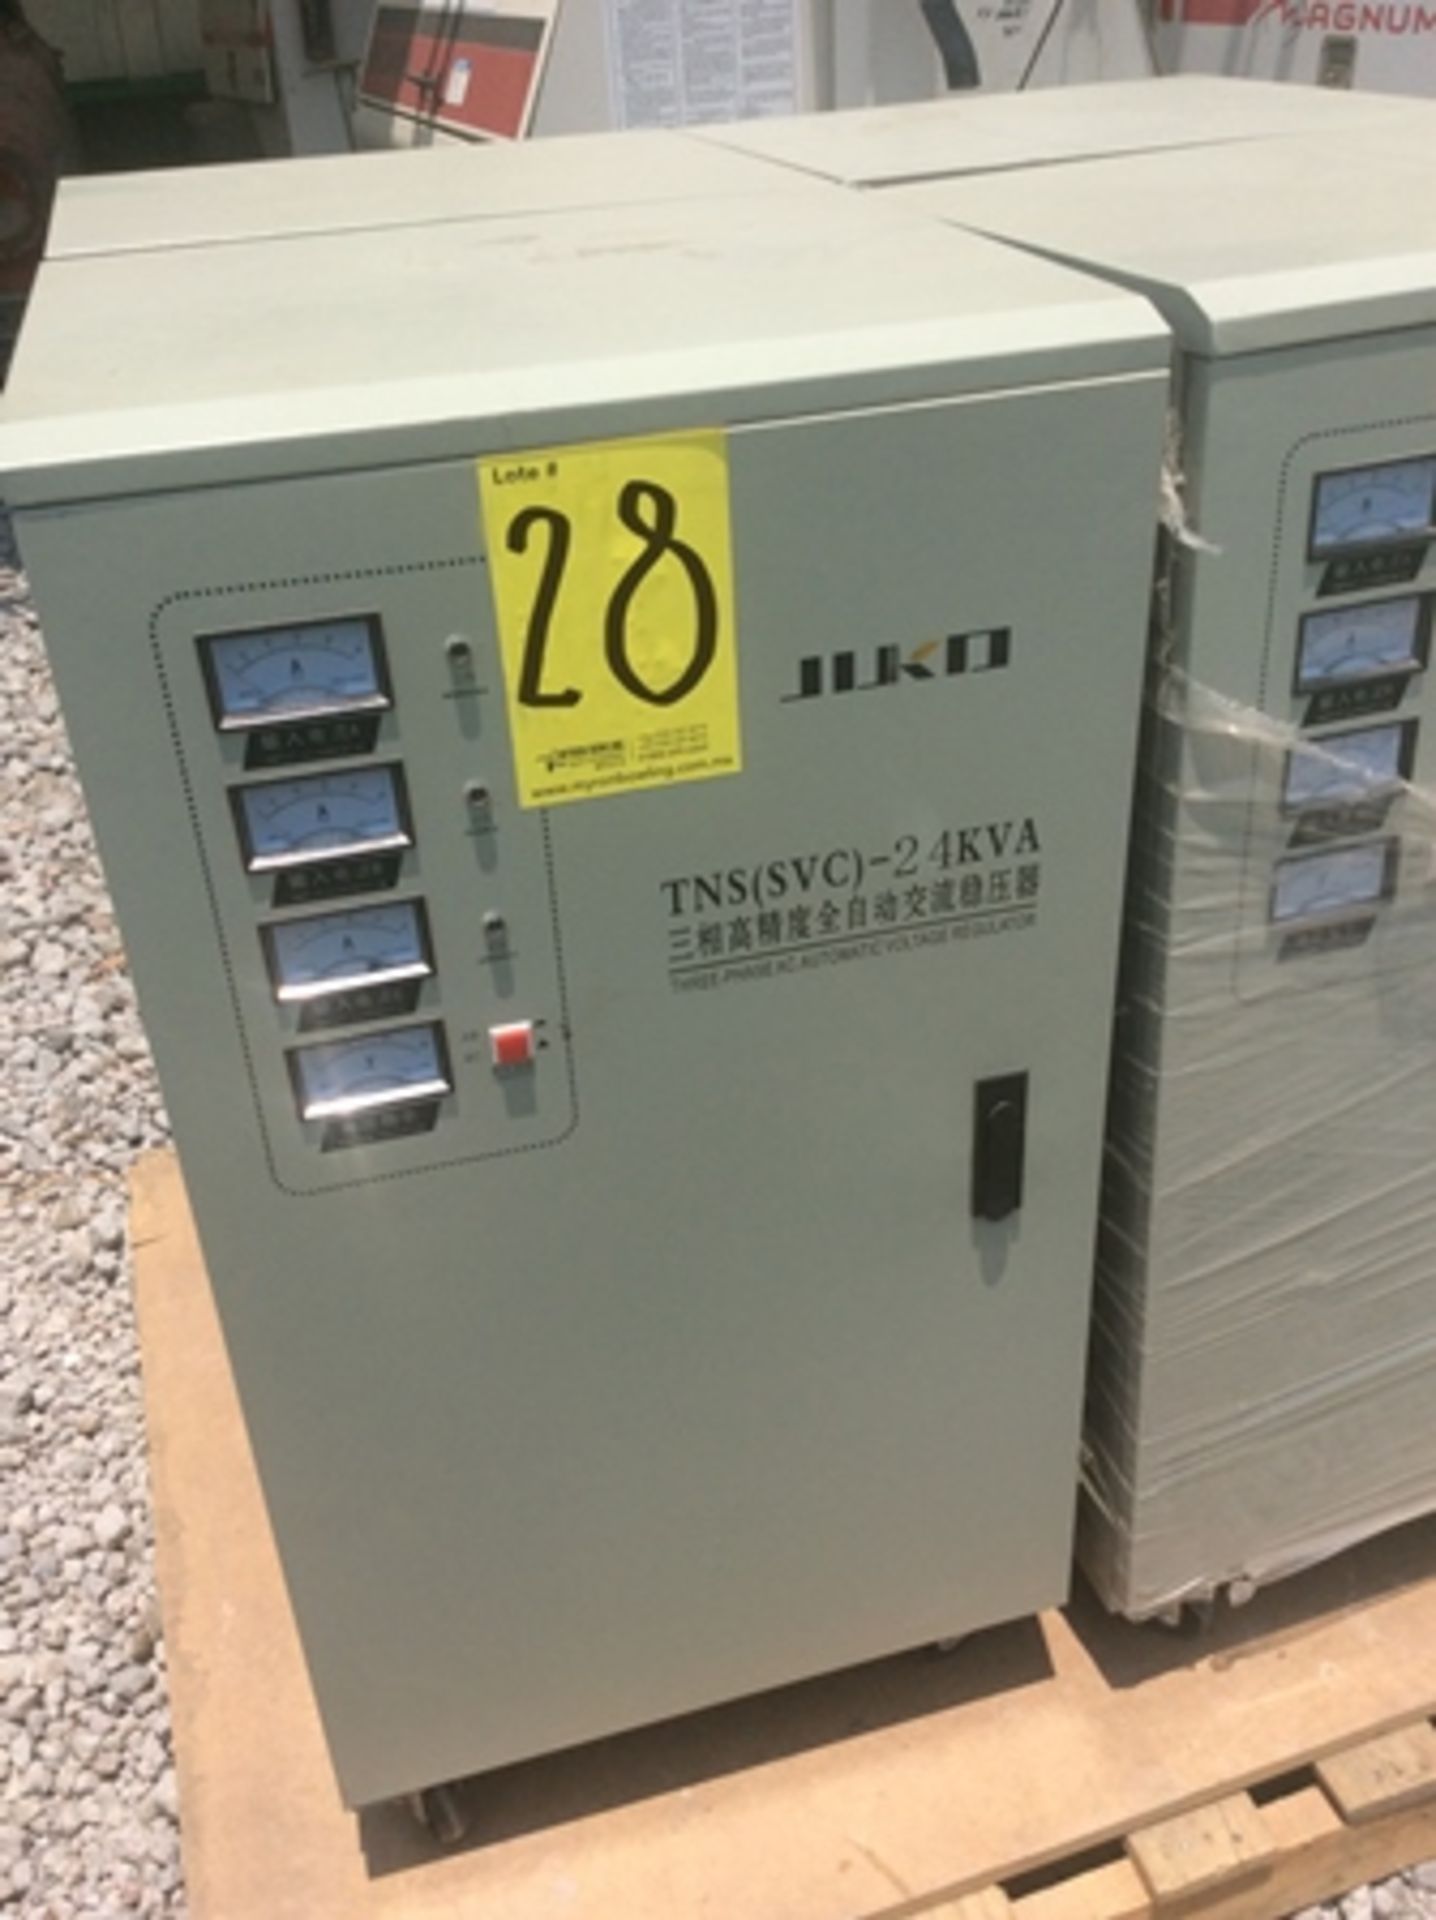 4 reguladores de voltaje marca: jijko modelo: tns(svc)-24kva capacidad: 24kva y colector de polvo s - Image 3 of 8